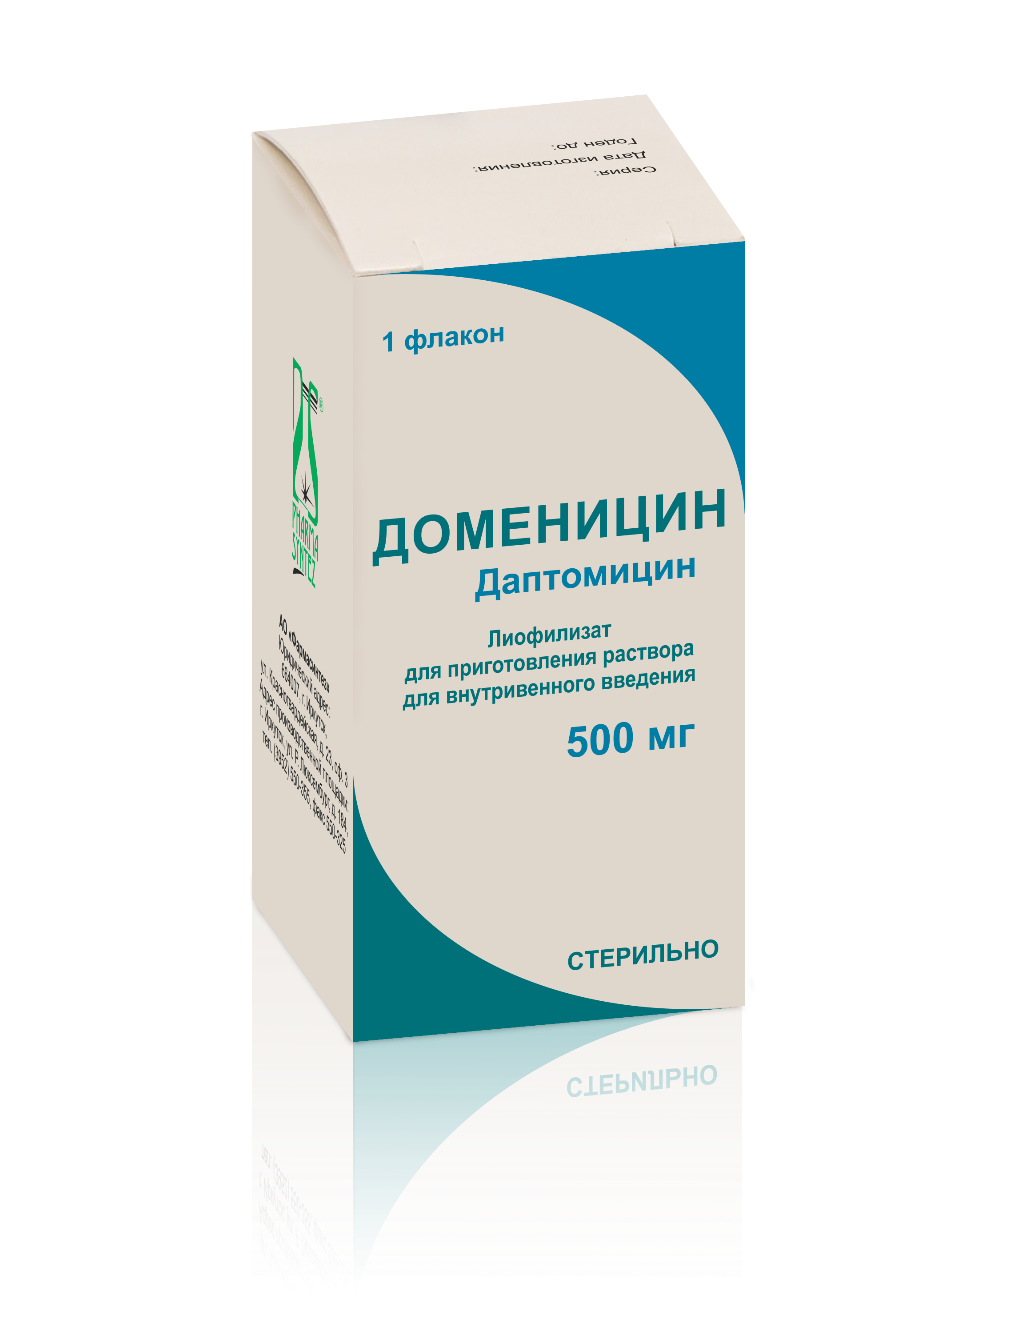 Доменицин — лиофилизат для приготовления раствора для внутривенного .